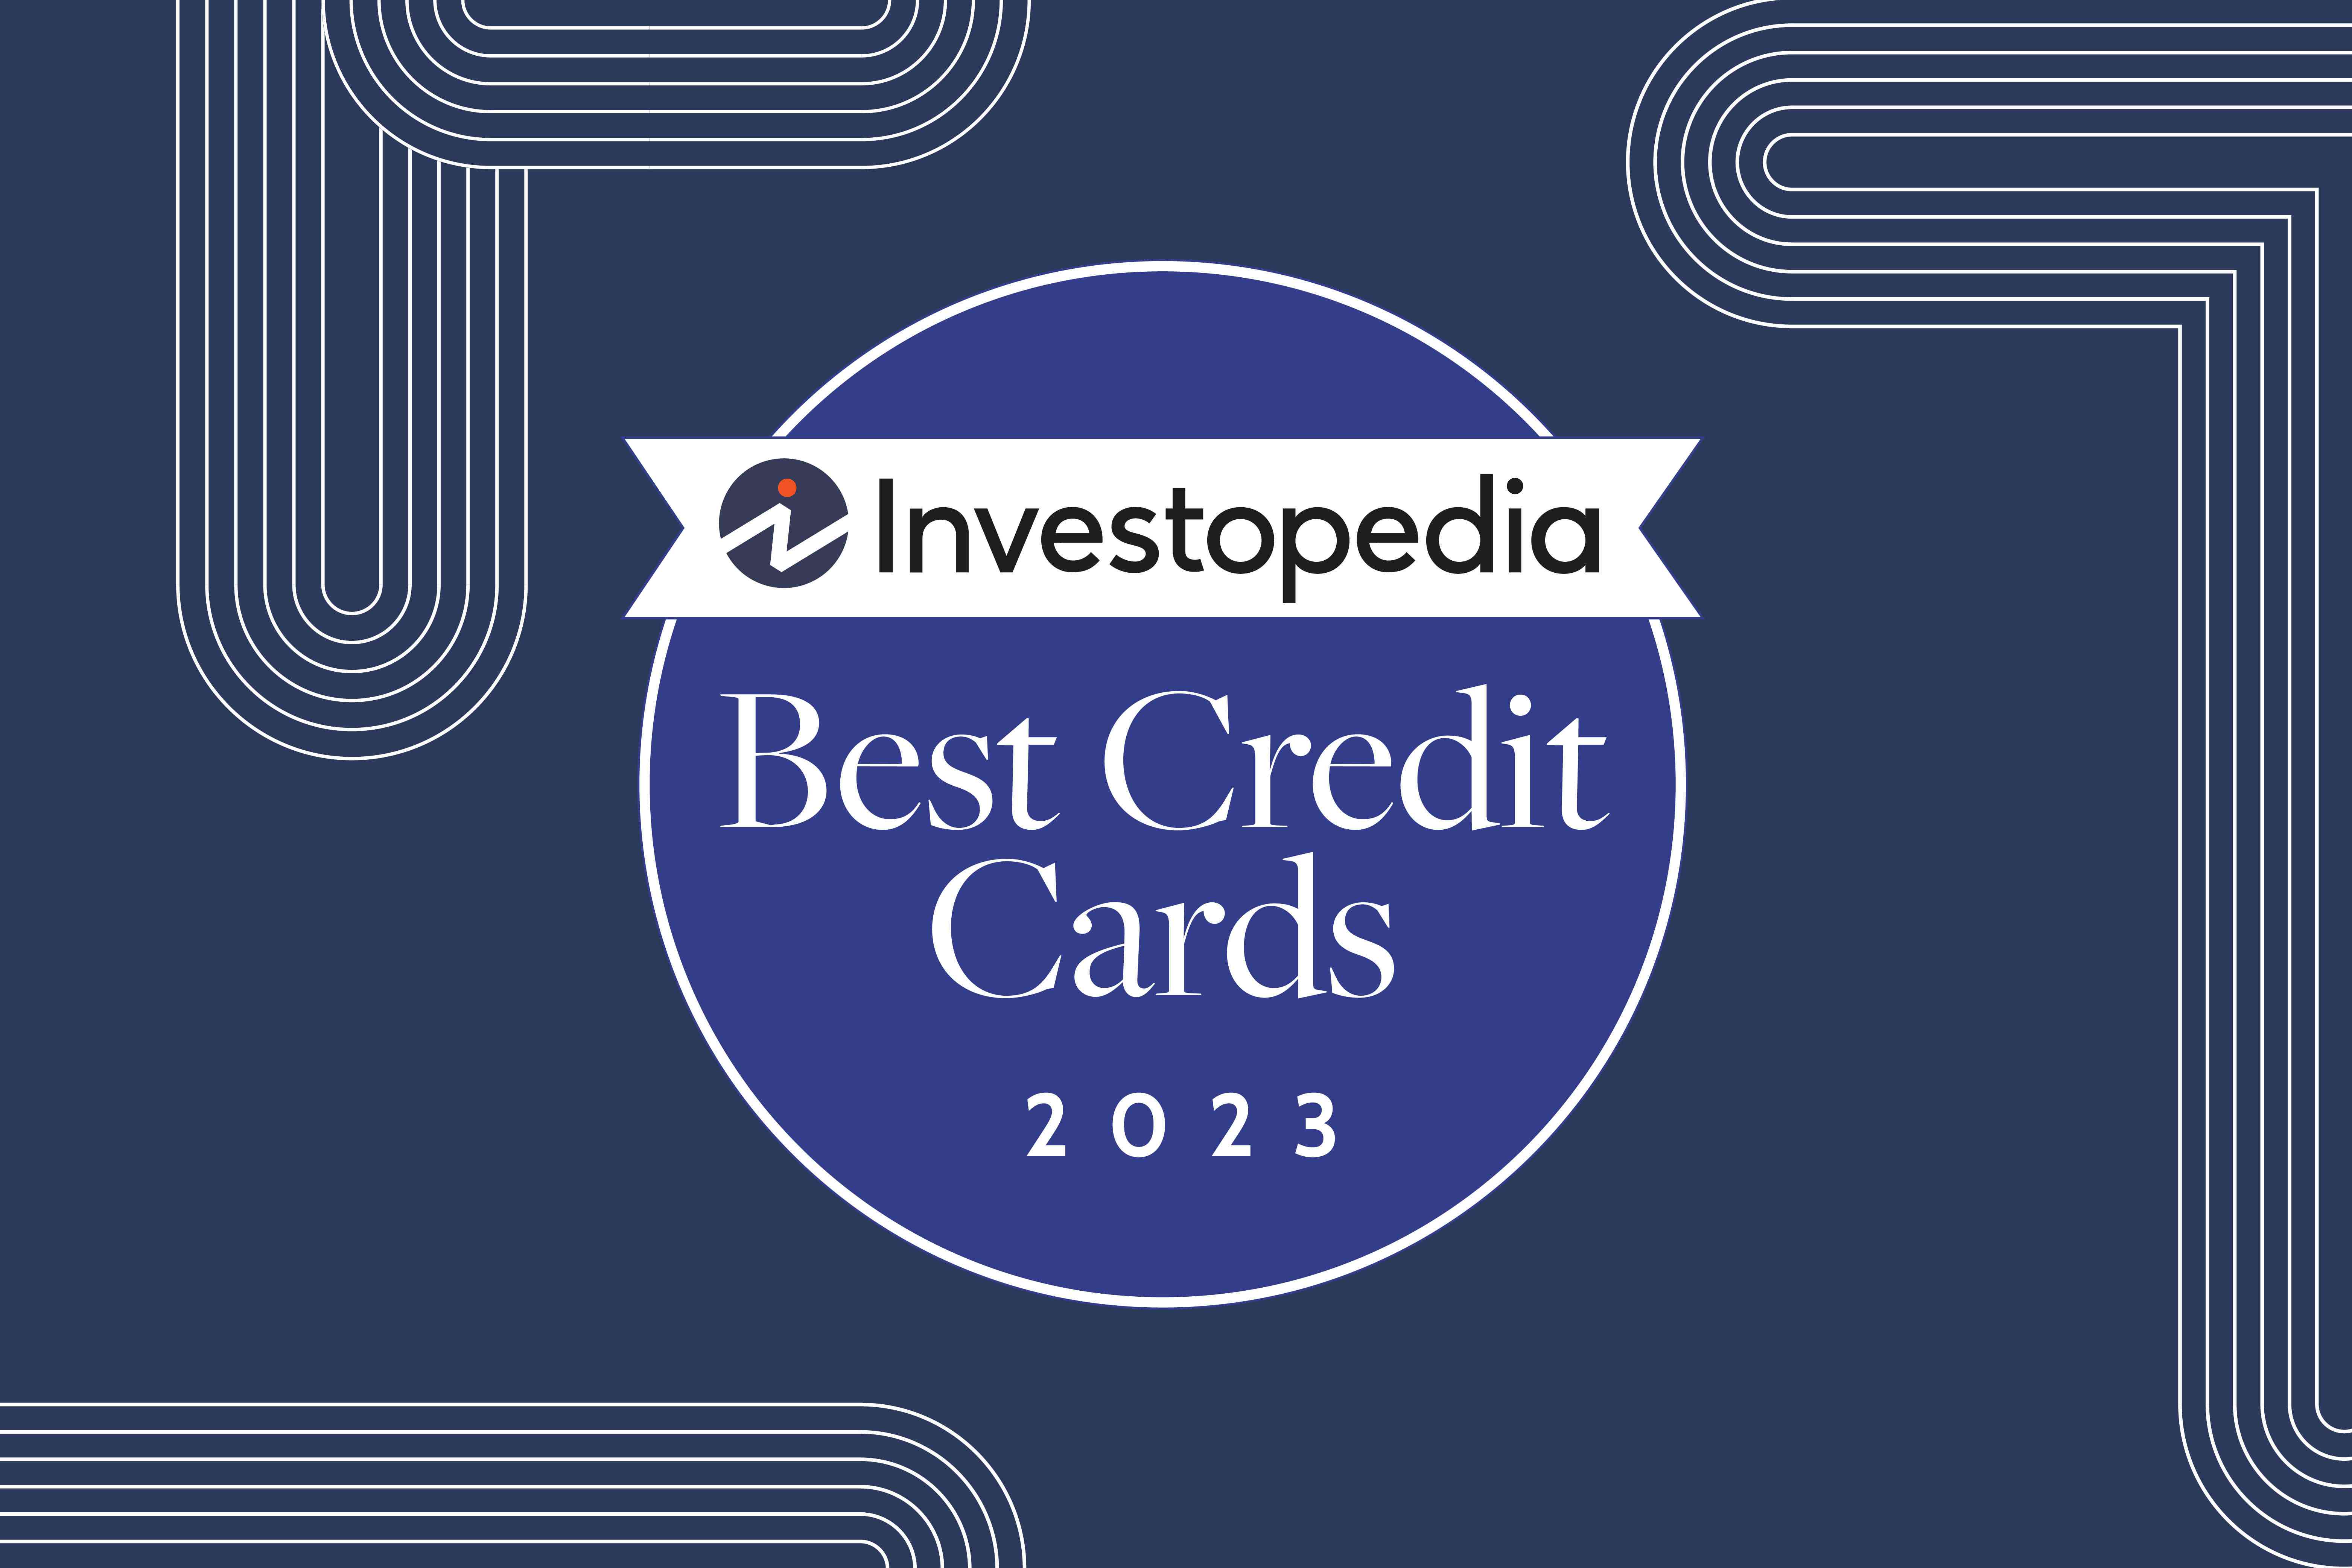 Investopedia Best Credit Cards 2023